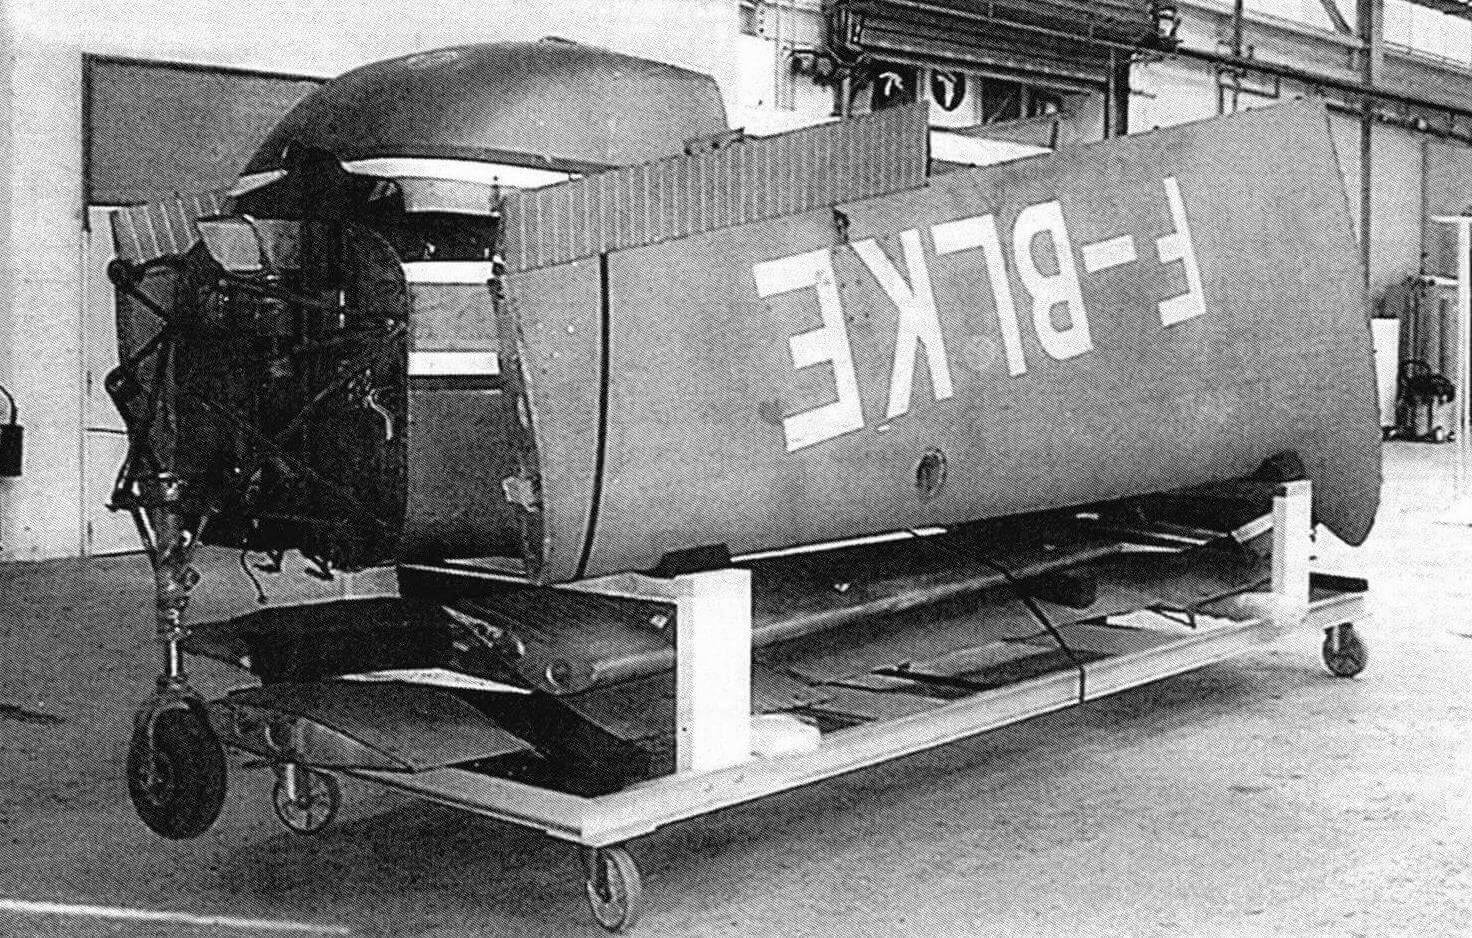 Спасенный от утилизации «Matra-Moynet-Jupiter» (peг. F-BLKE) был передан любителями авиации в музей Ле-Бурже